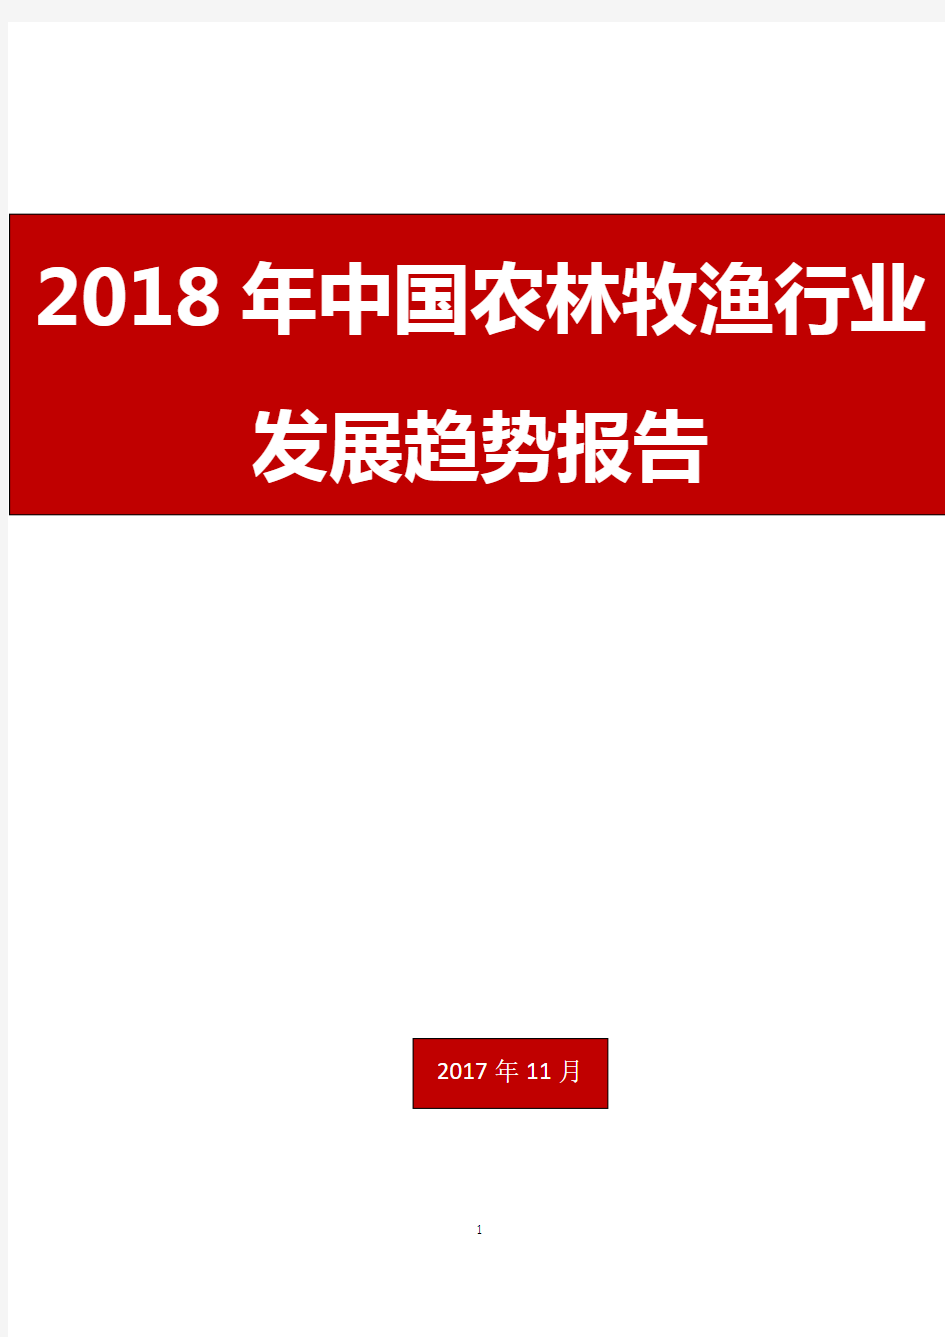 2018年中国农林牧渔行业发展趋势报告